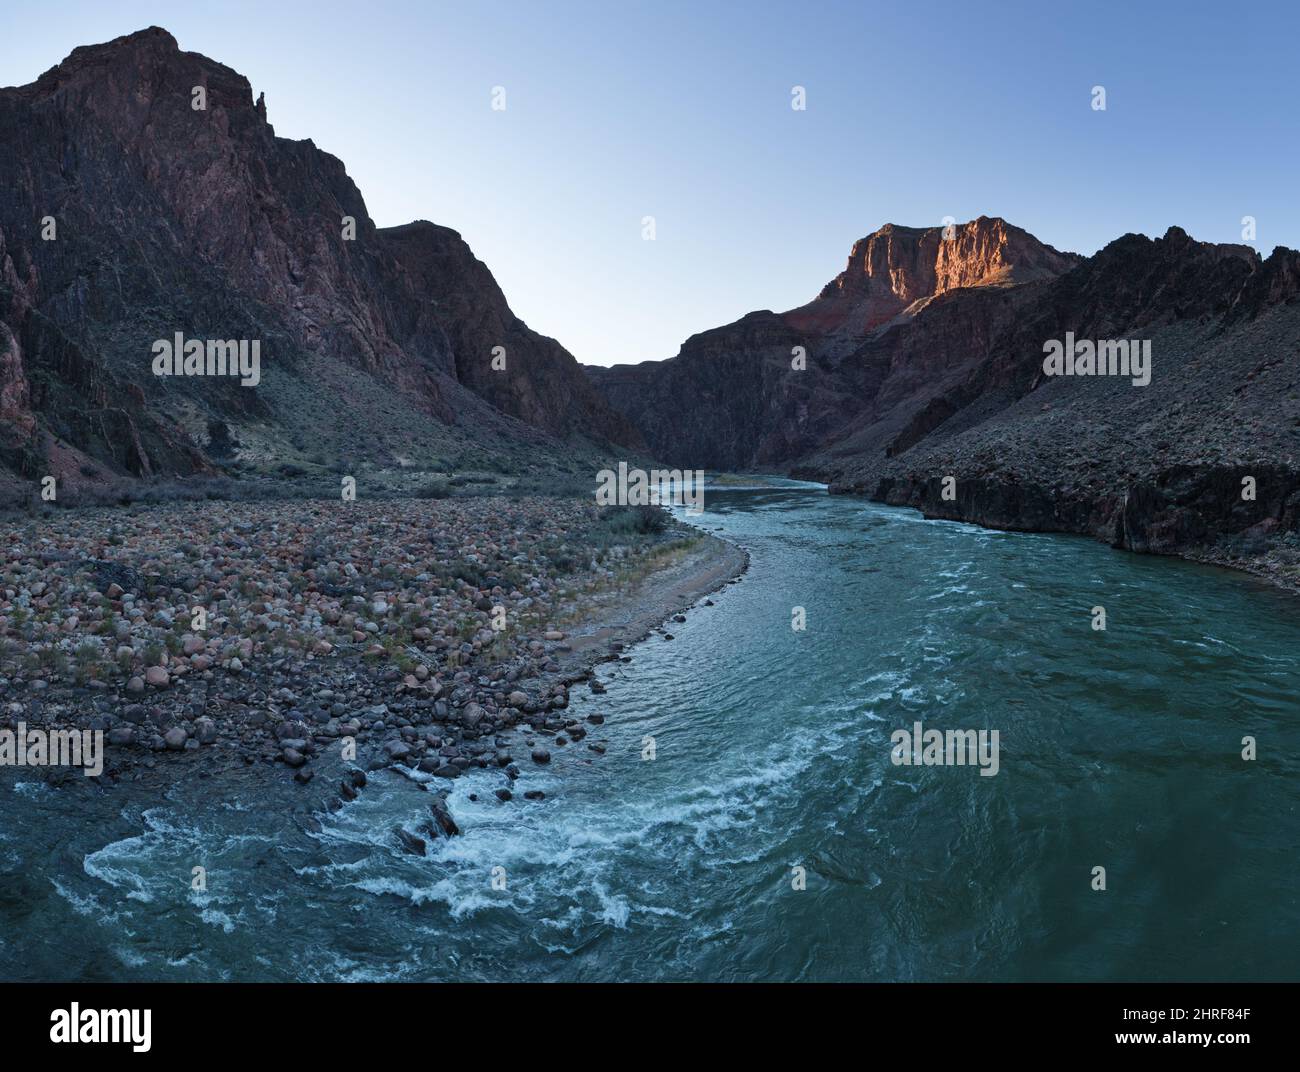 Le fleuve Colorado coule dans la gorge intérieure du parc national du Grand Canyon, en Arizona Banque D'Images